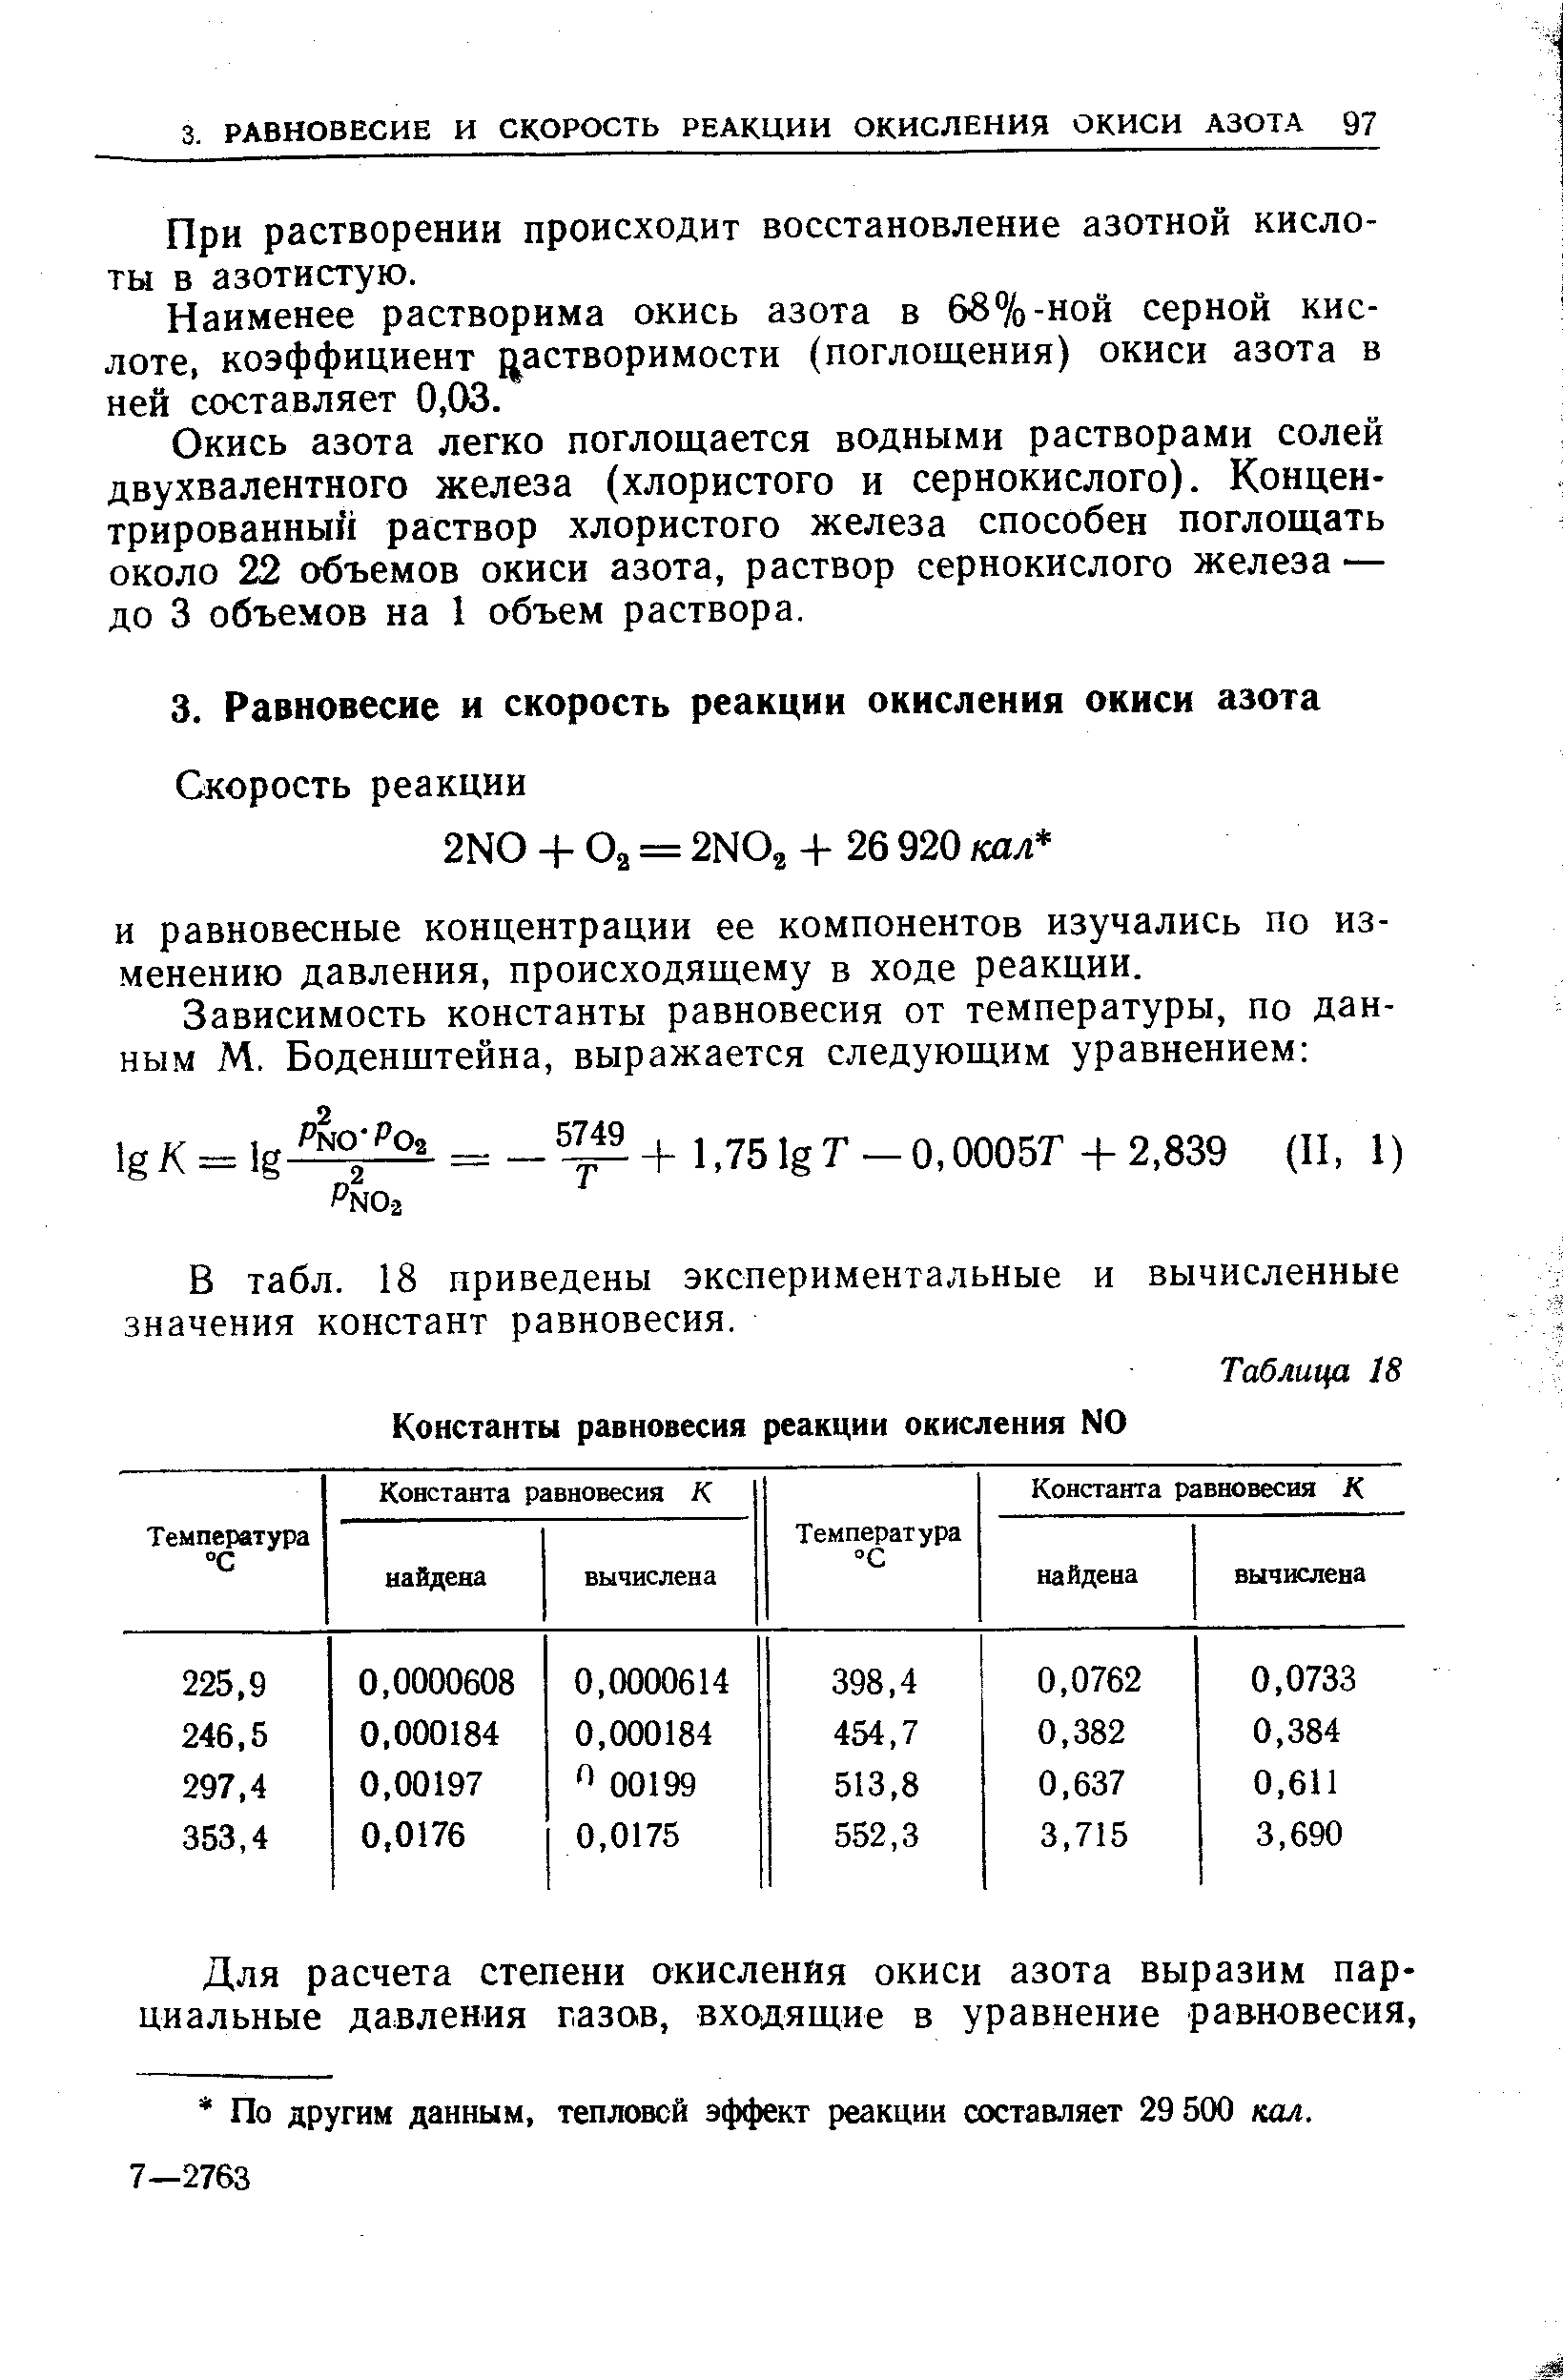 В табл. 18 приведены экспериментальные и вычисленные значения констант равновесия.